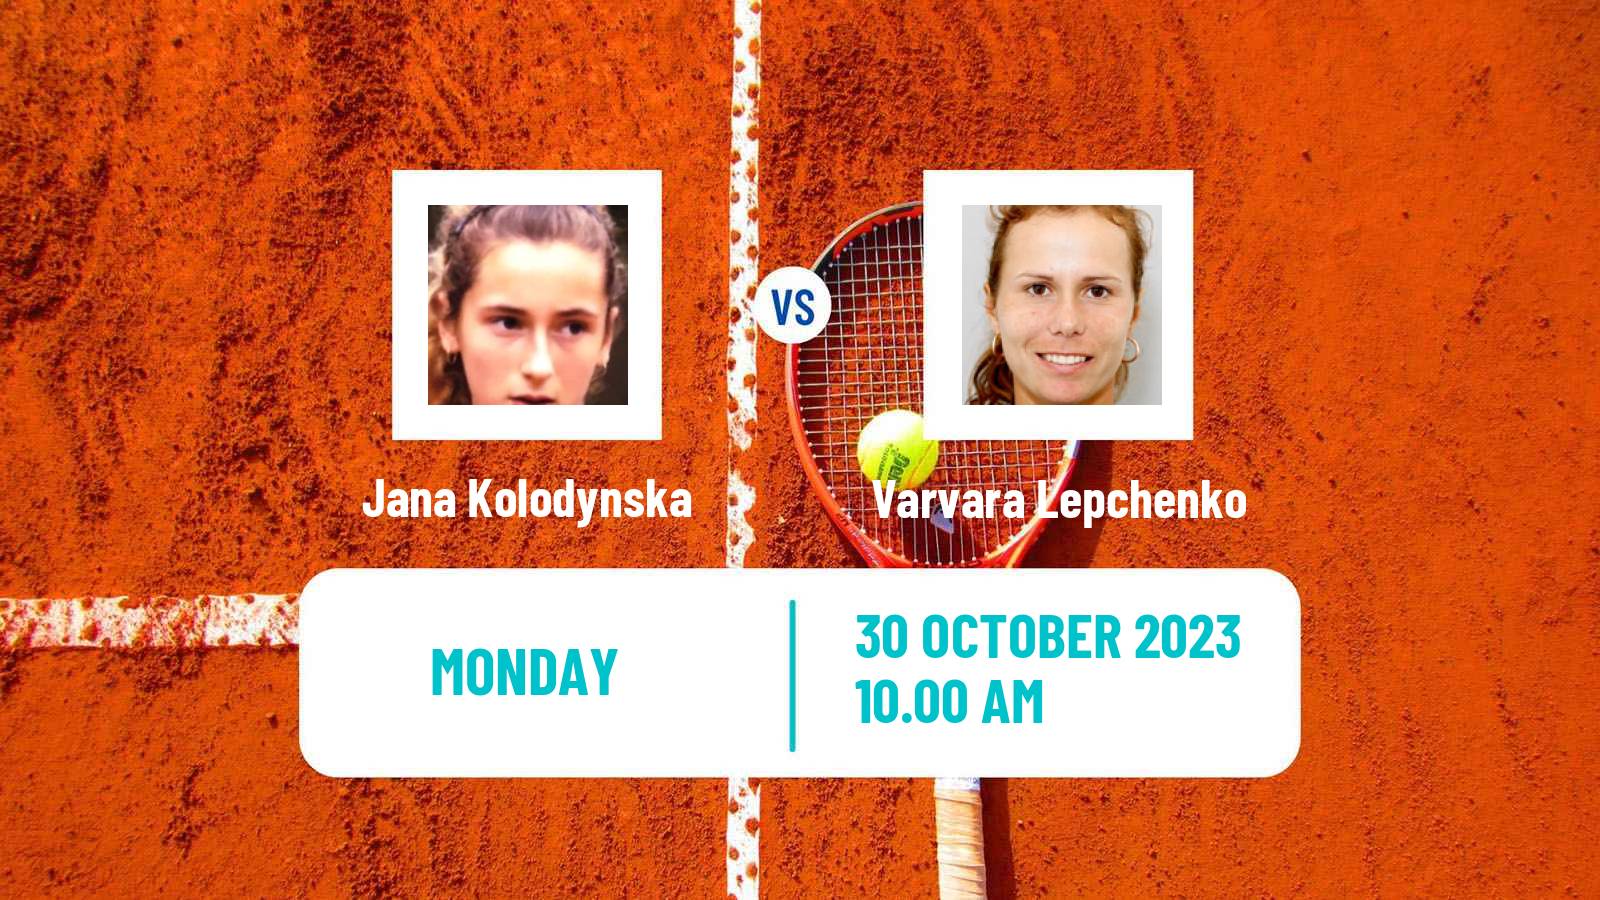 Tennis Midland Challenger Women Jana Kolodynska - Varvara Lepchenko